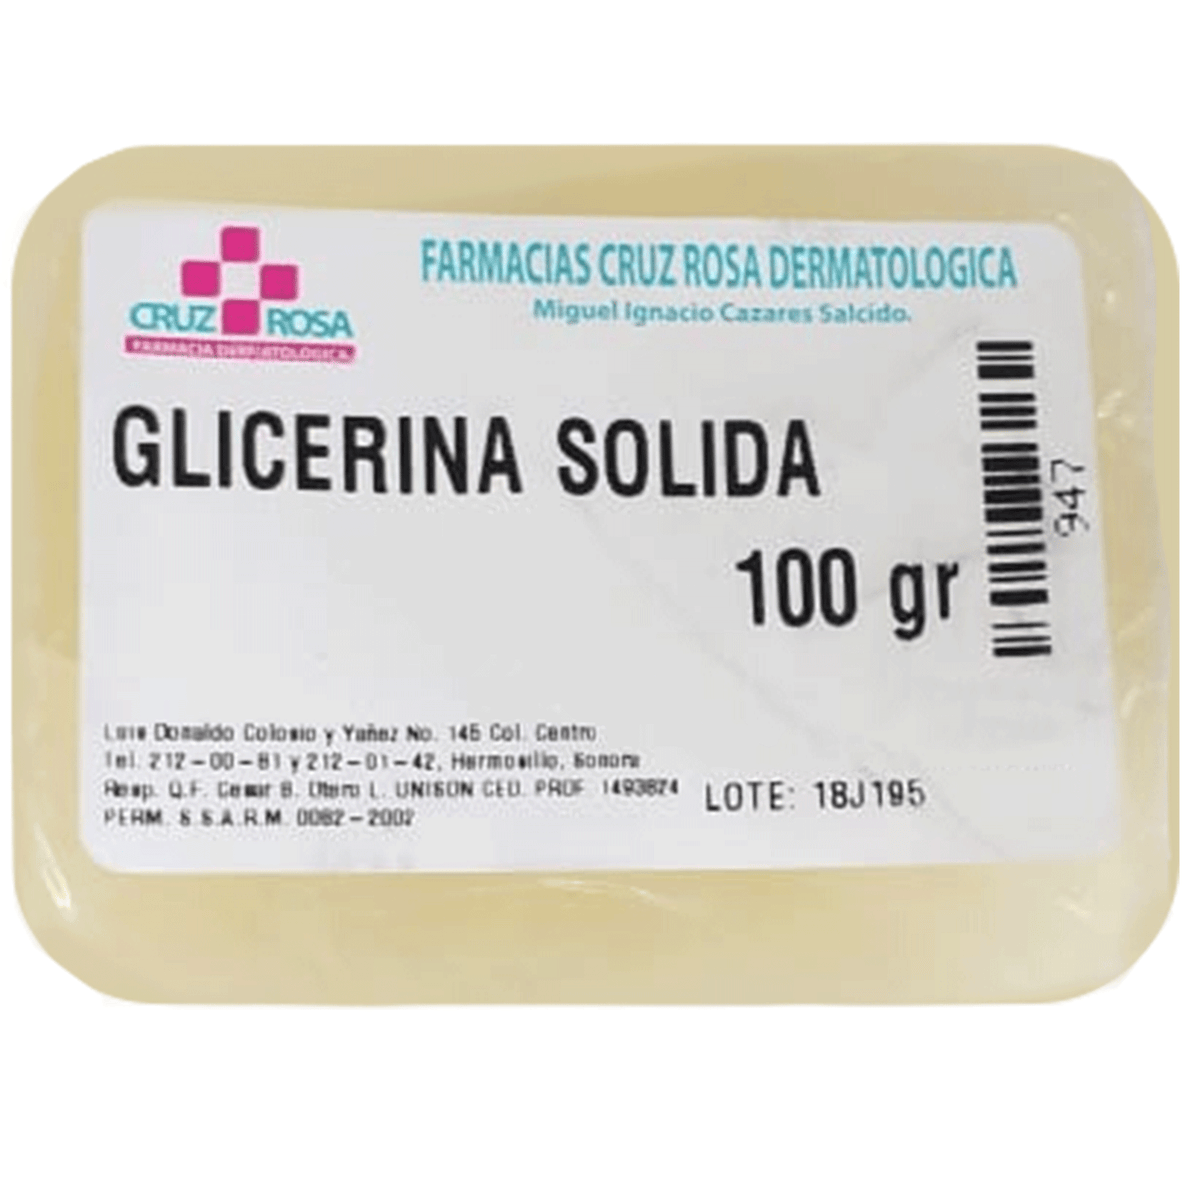 GLICERINA SÓLIDA 100GR - FARMACIA CRUZ ROSA, Farmacia Dermatológica Cruz  Rosa, Cuidado de la piel